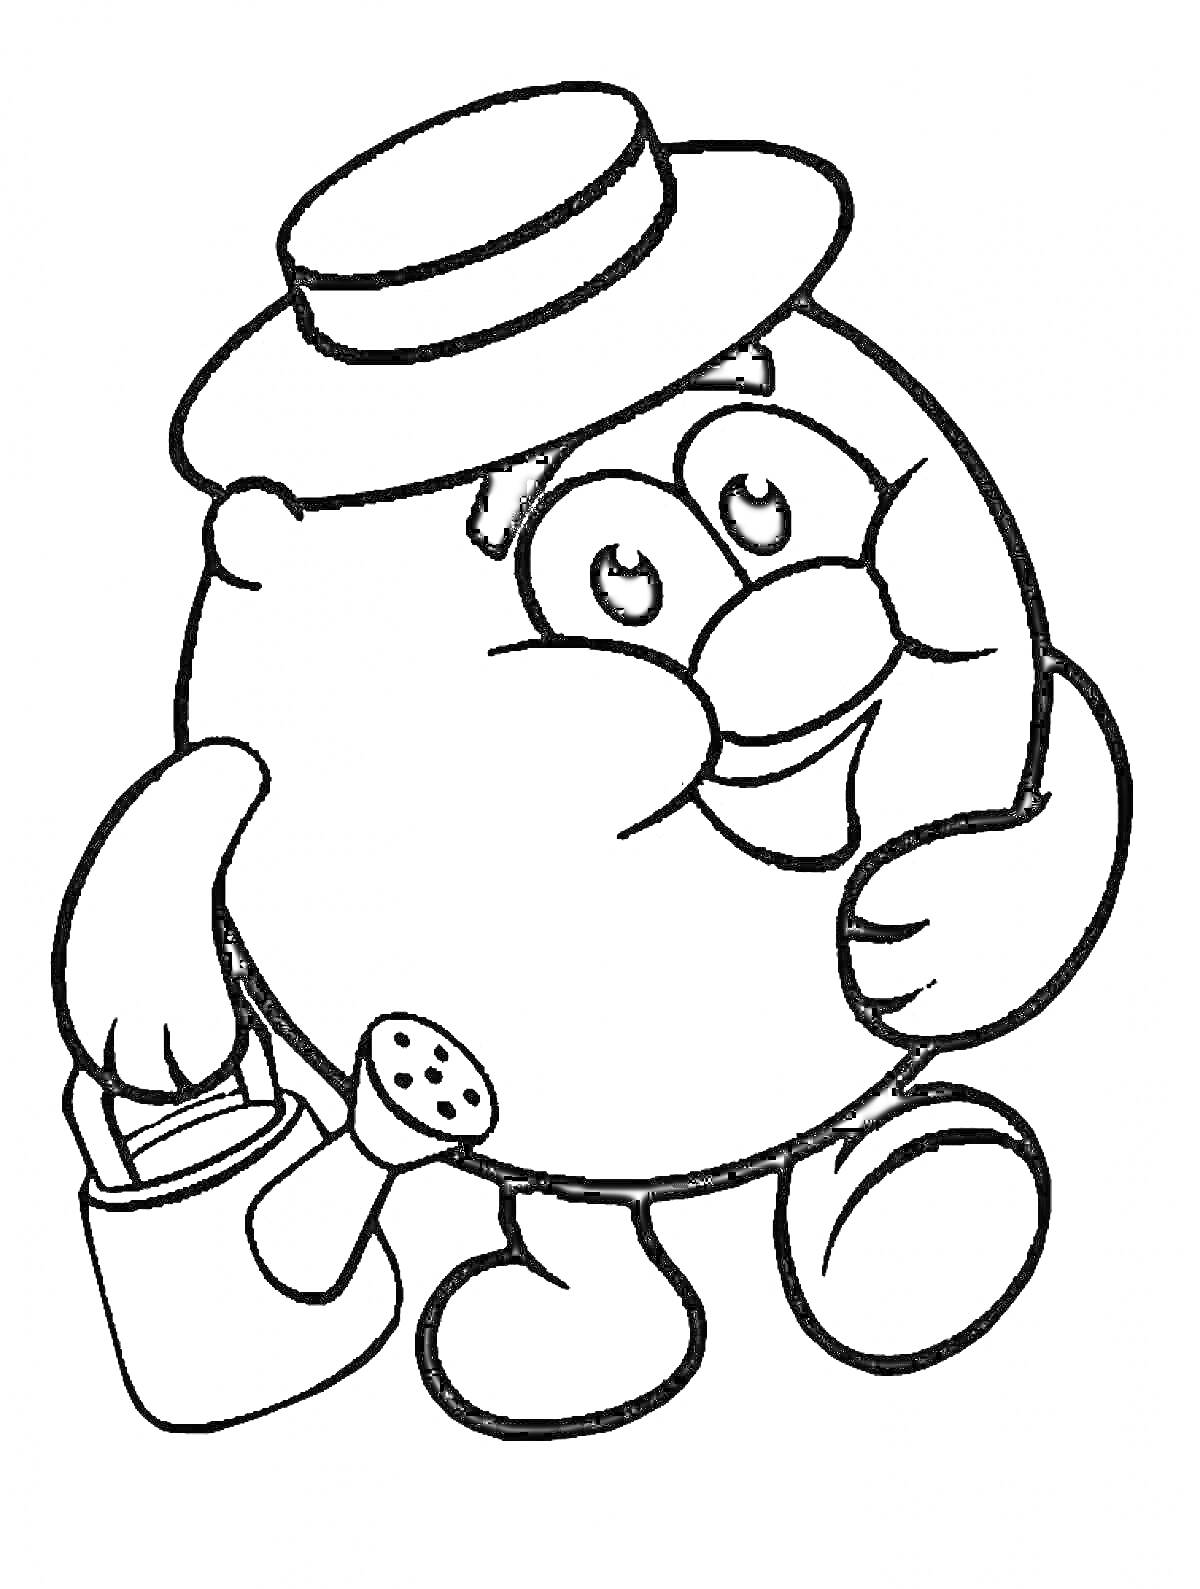 Раскраска Круглый персонаж с шляпой, лейкой и корзинкой